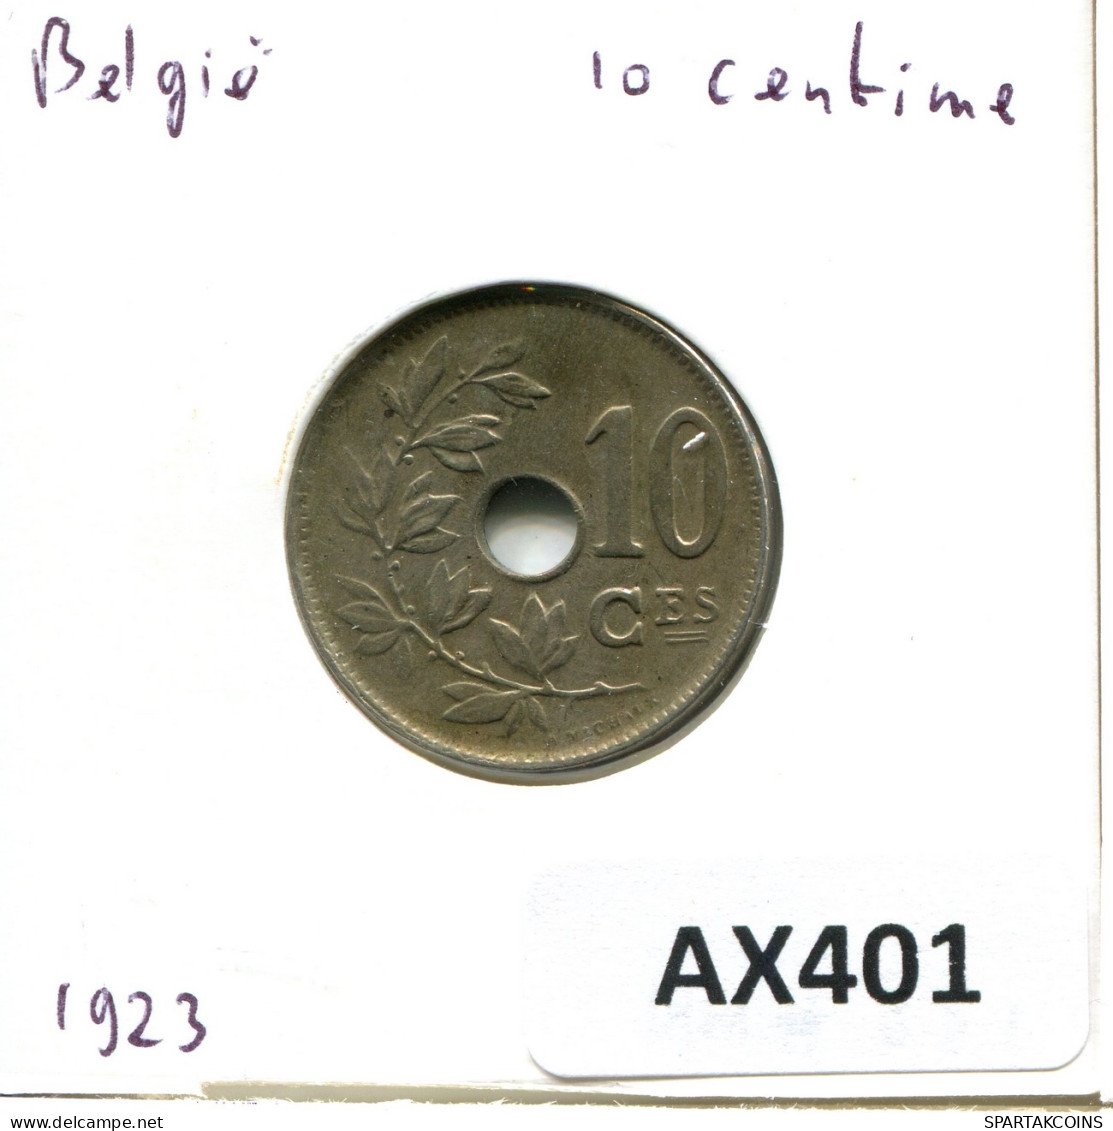 10 CENTIMES 1923 BÉLGICA BELGIUM Moneda DUTCH Text #AX401.E - 10 Cent